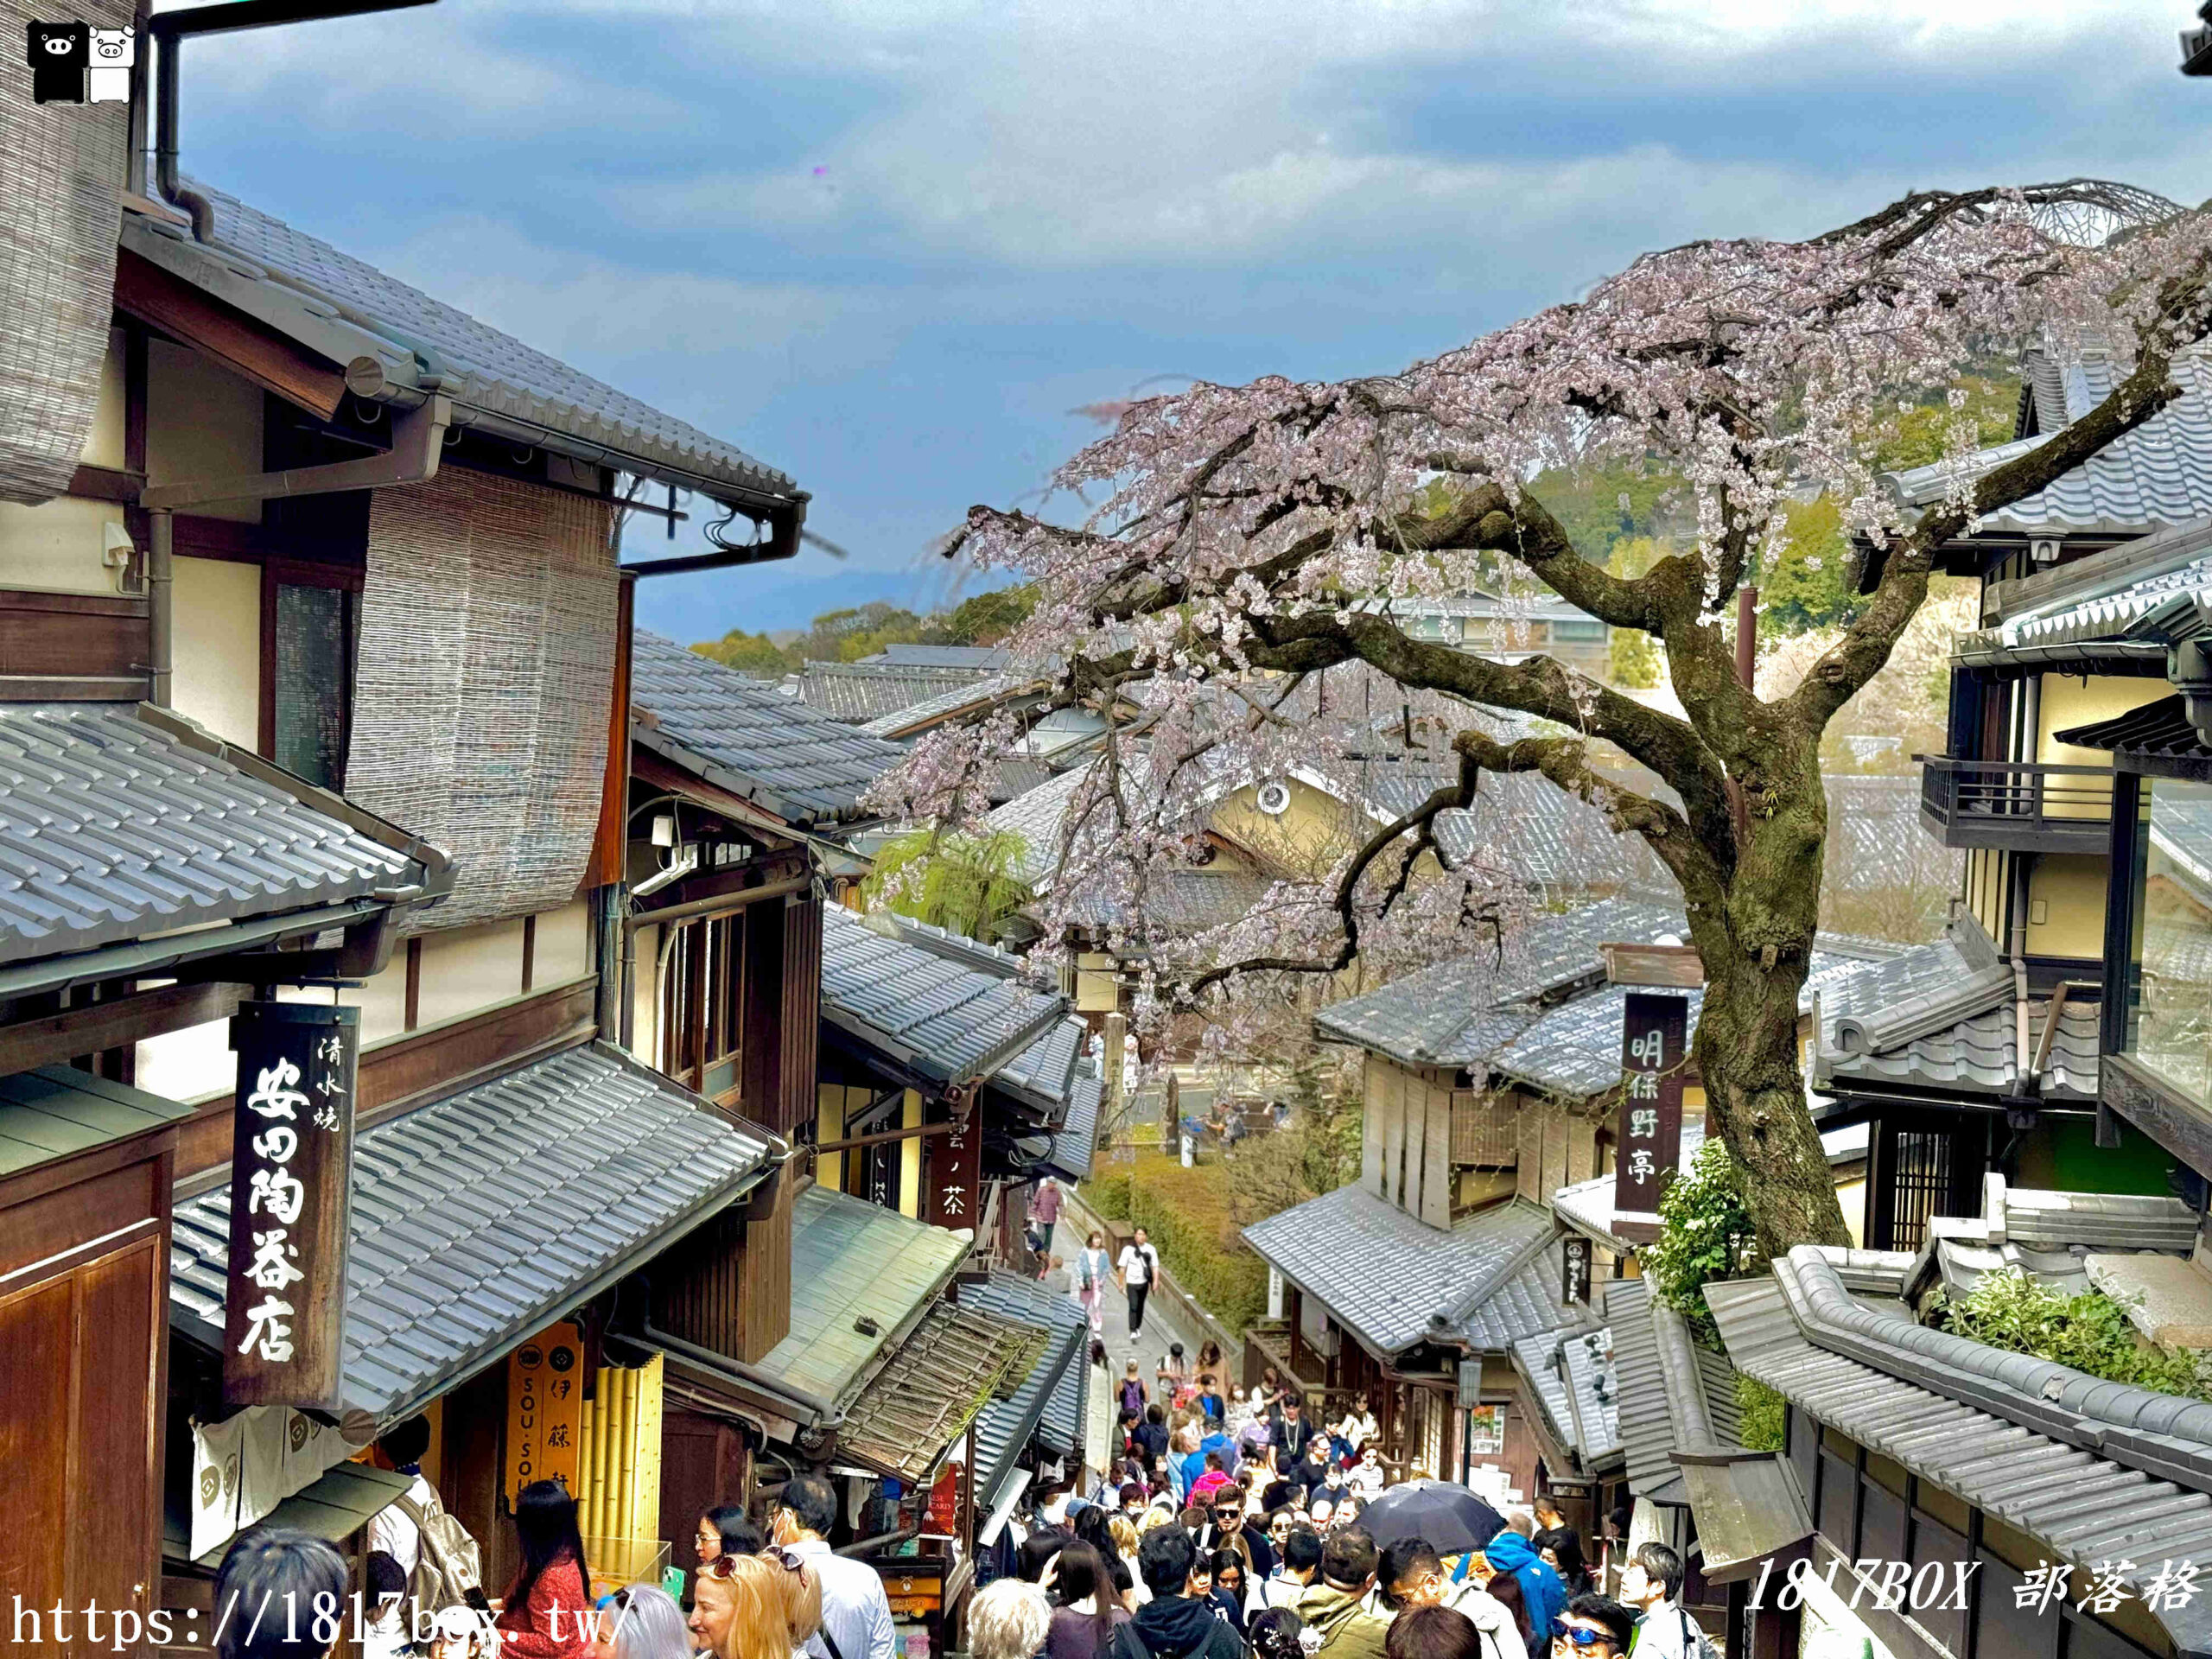 即時熱門文章：【京都景點】日本清水寺周邊景點。二寧坂(二年坂)。三年坂(產寧坂)。充滿古都風情的熱門觀光地